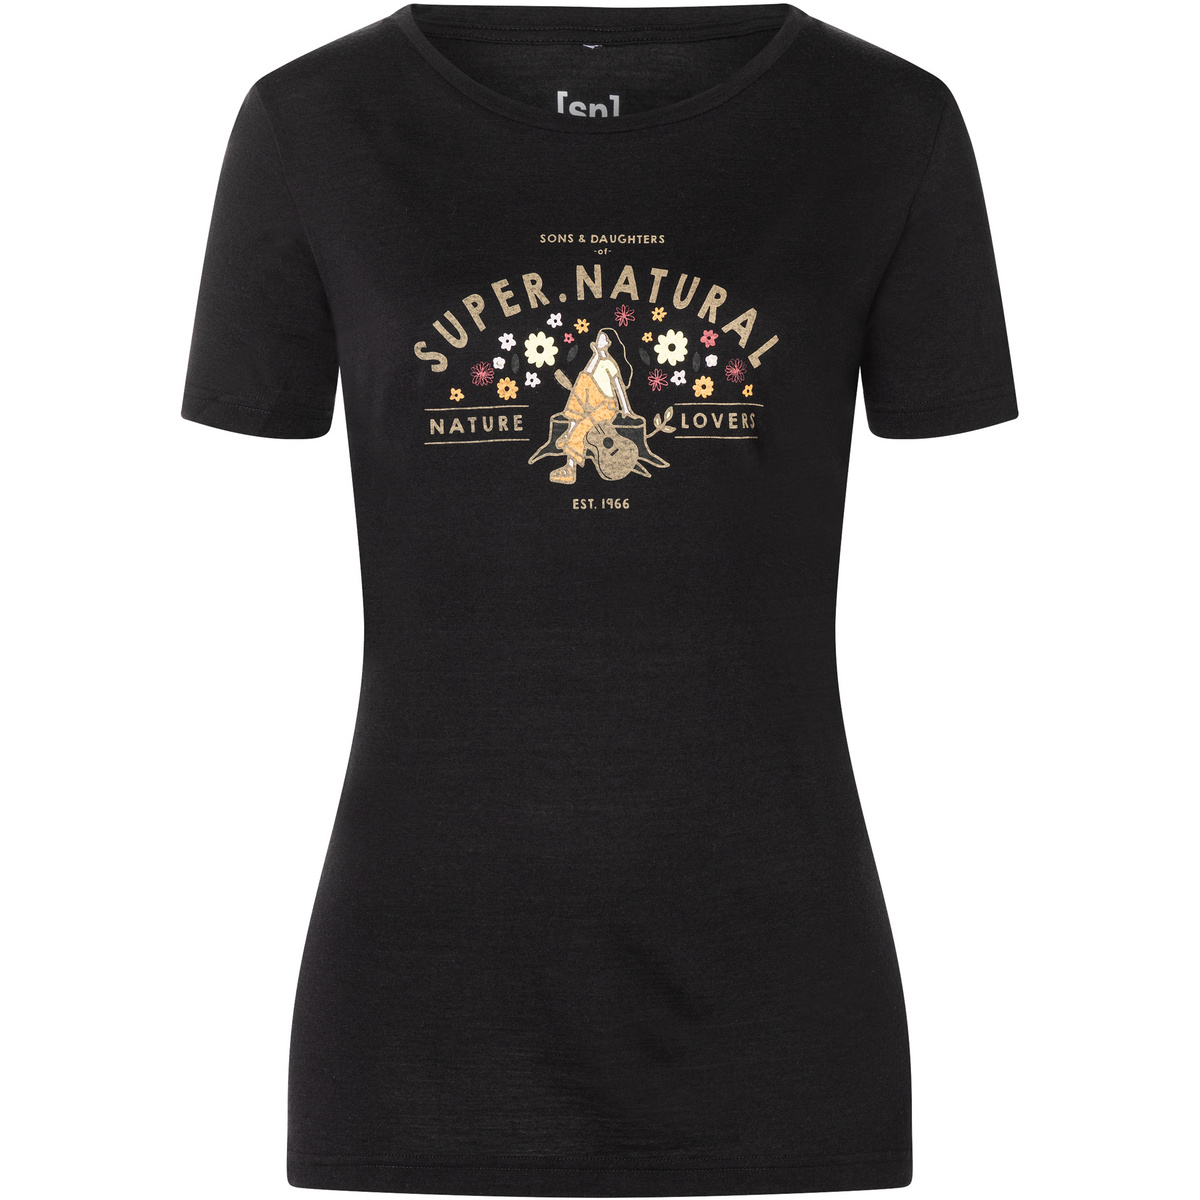 Super.Natural Damen S&D Girl T-Shirt